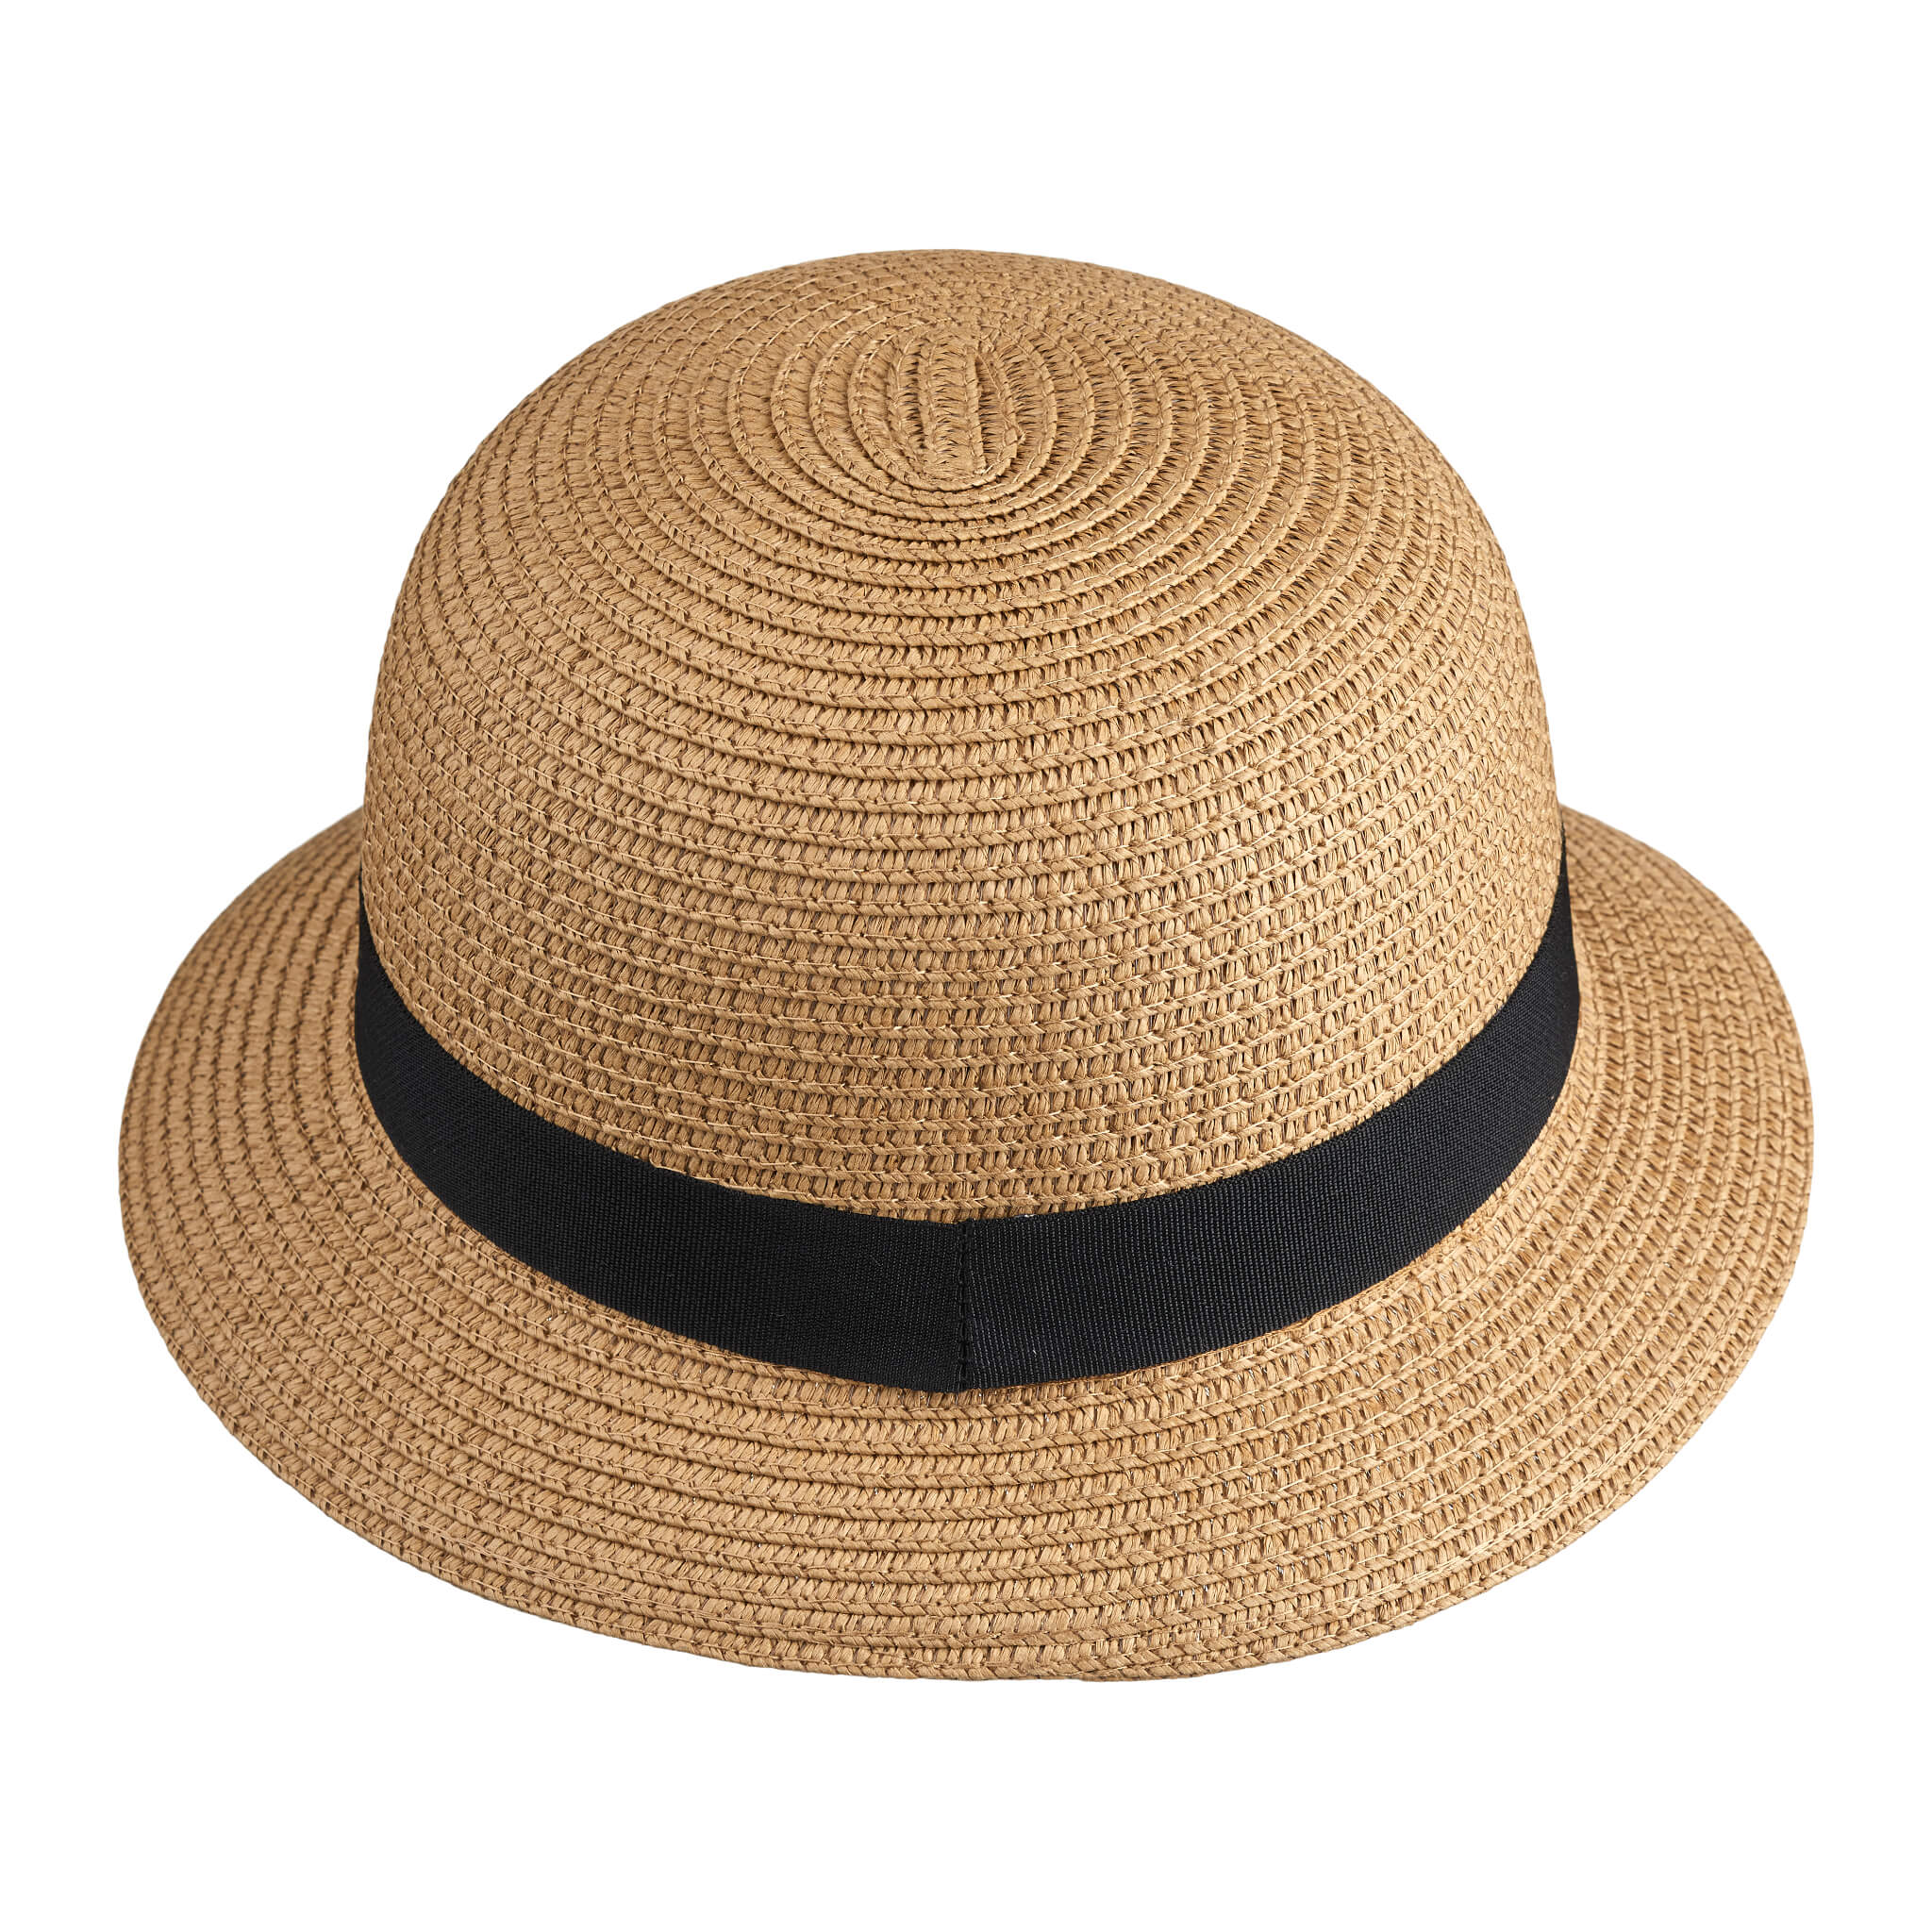 Liewood Children's Balder Bucket Hat in Brown/ Black